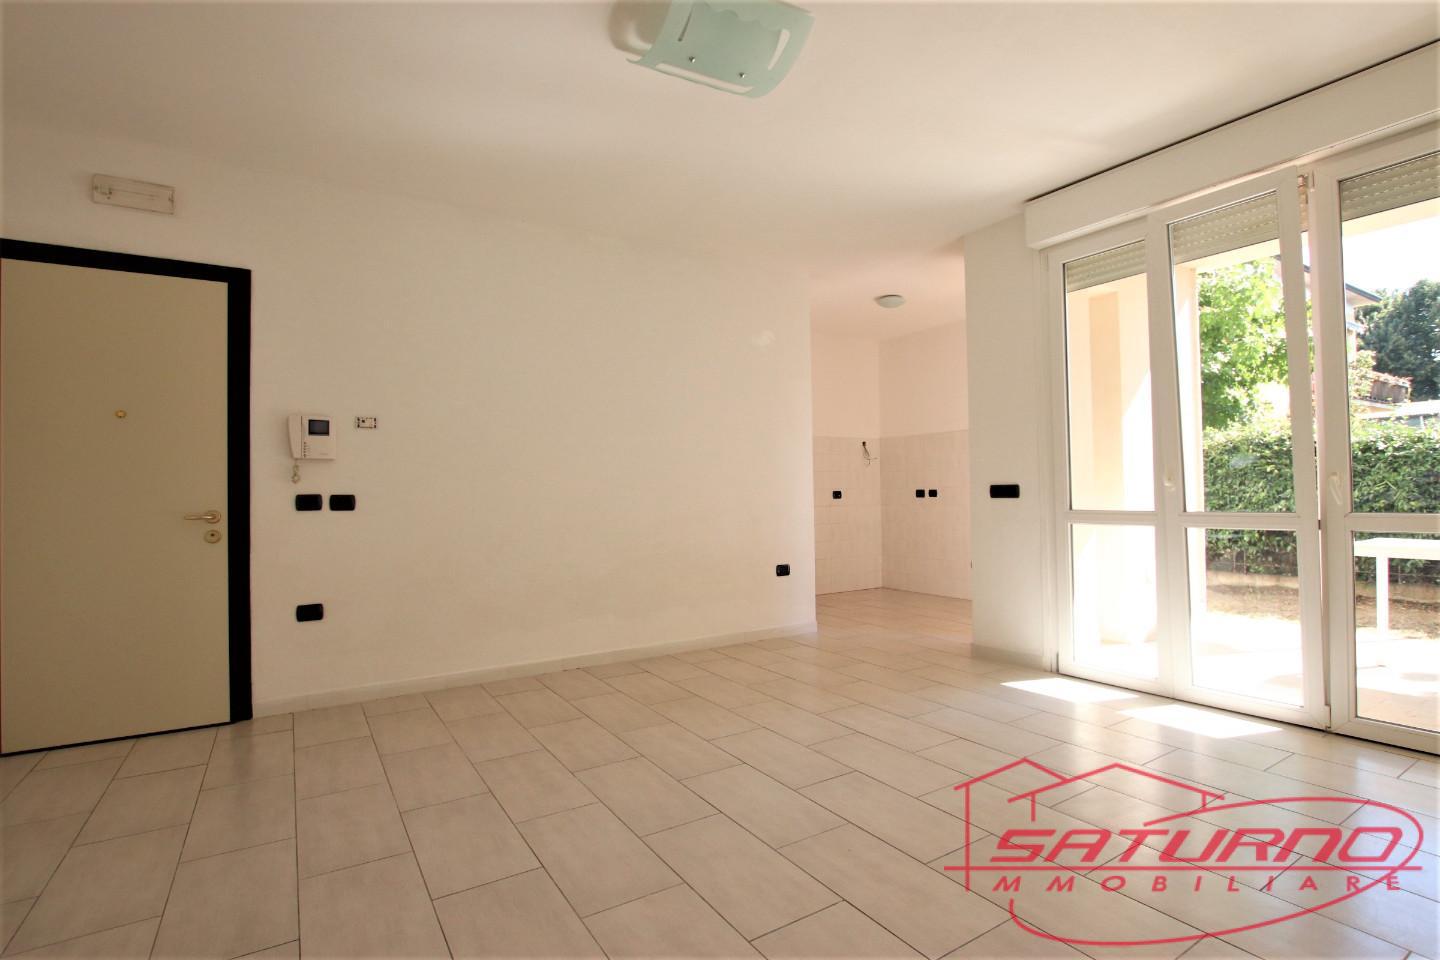 Appartamento in vendita a Lucca, 3 locali, prezzo € 170.000 | PortaleAgenzieImmobiliari.it